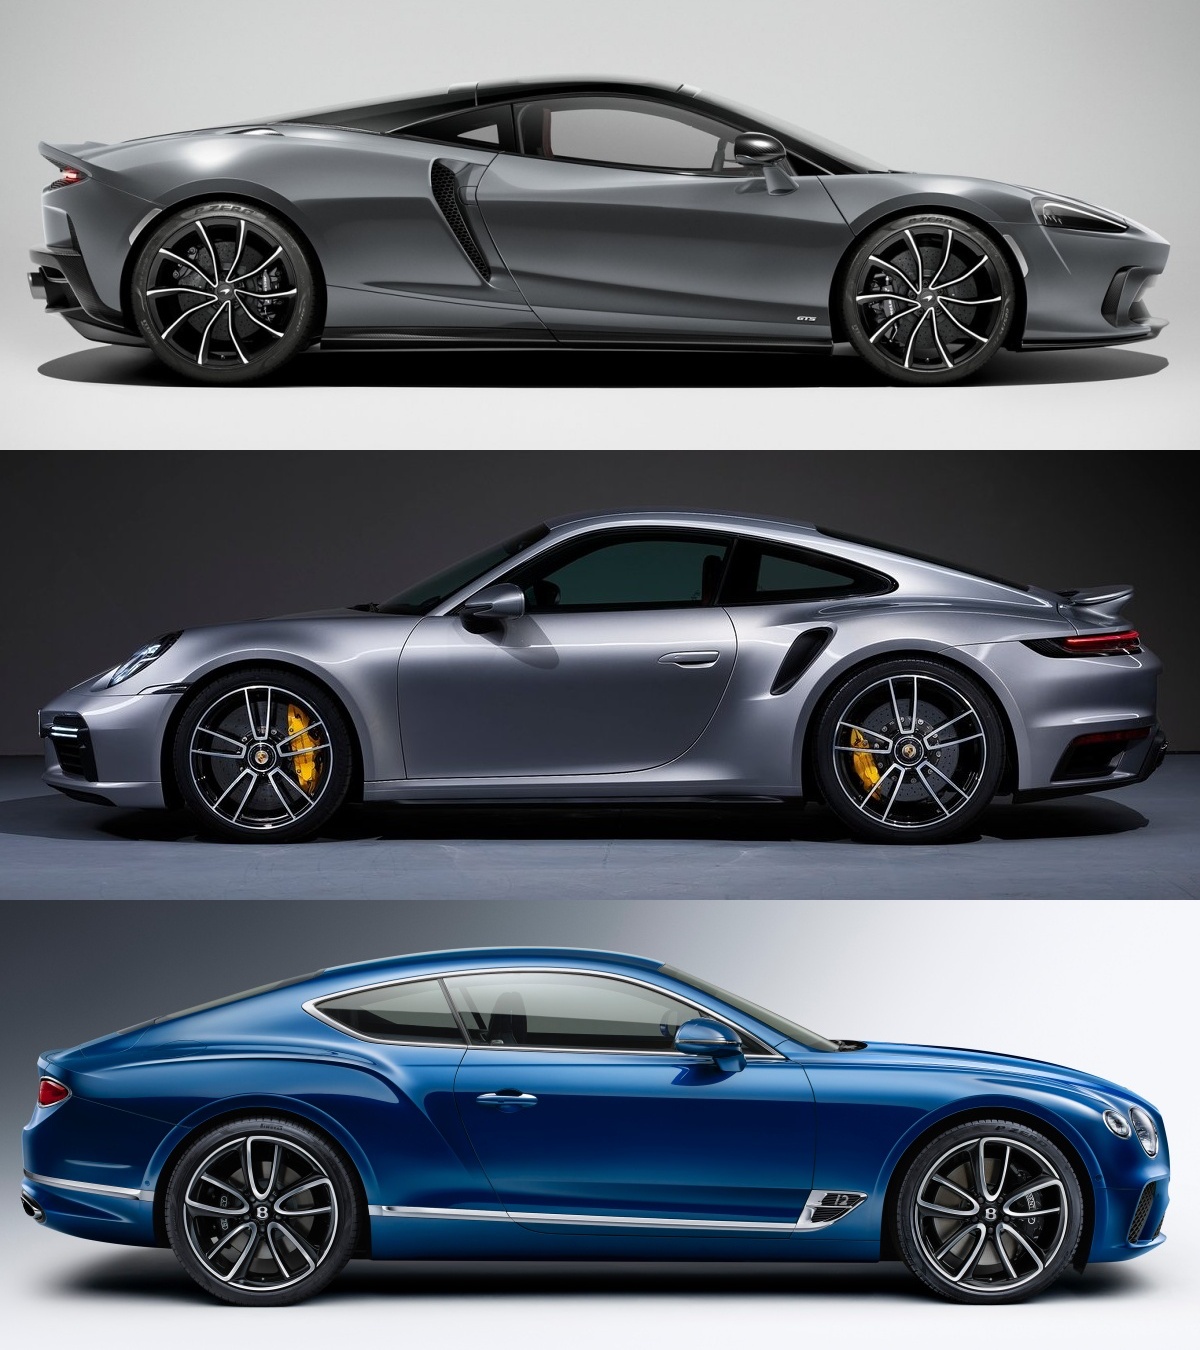 '맥라렌 GTS', '포르쉐 911 터보 S', '벤틀리 컨티넨탈 GT'의 사진이 위에서부터 순차적으로 나열되어 있다.